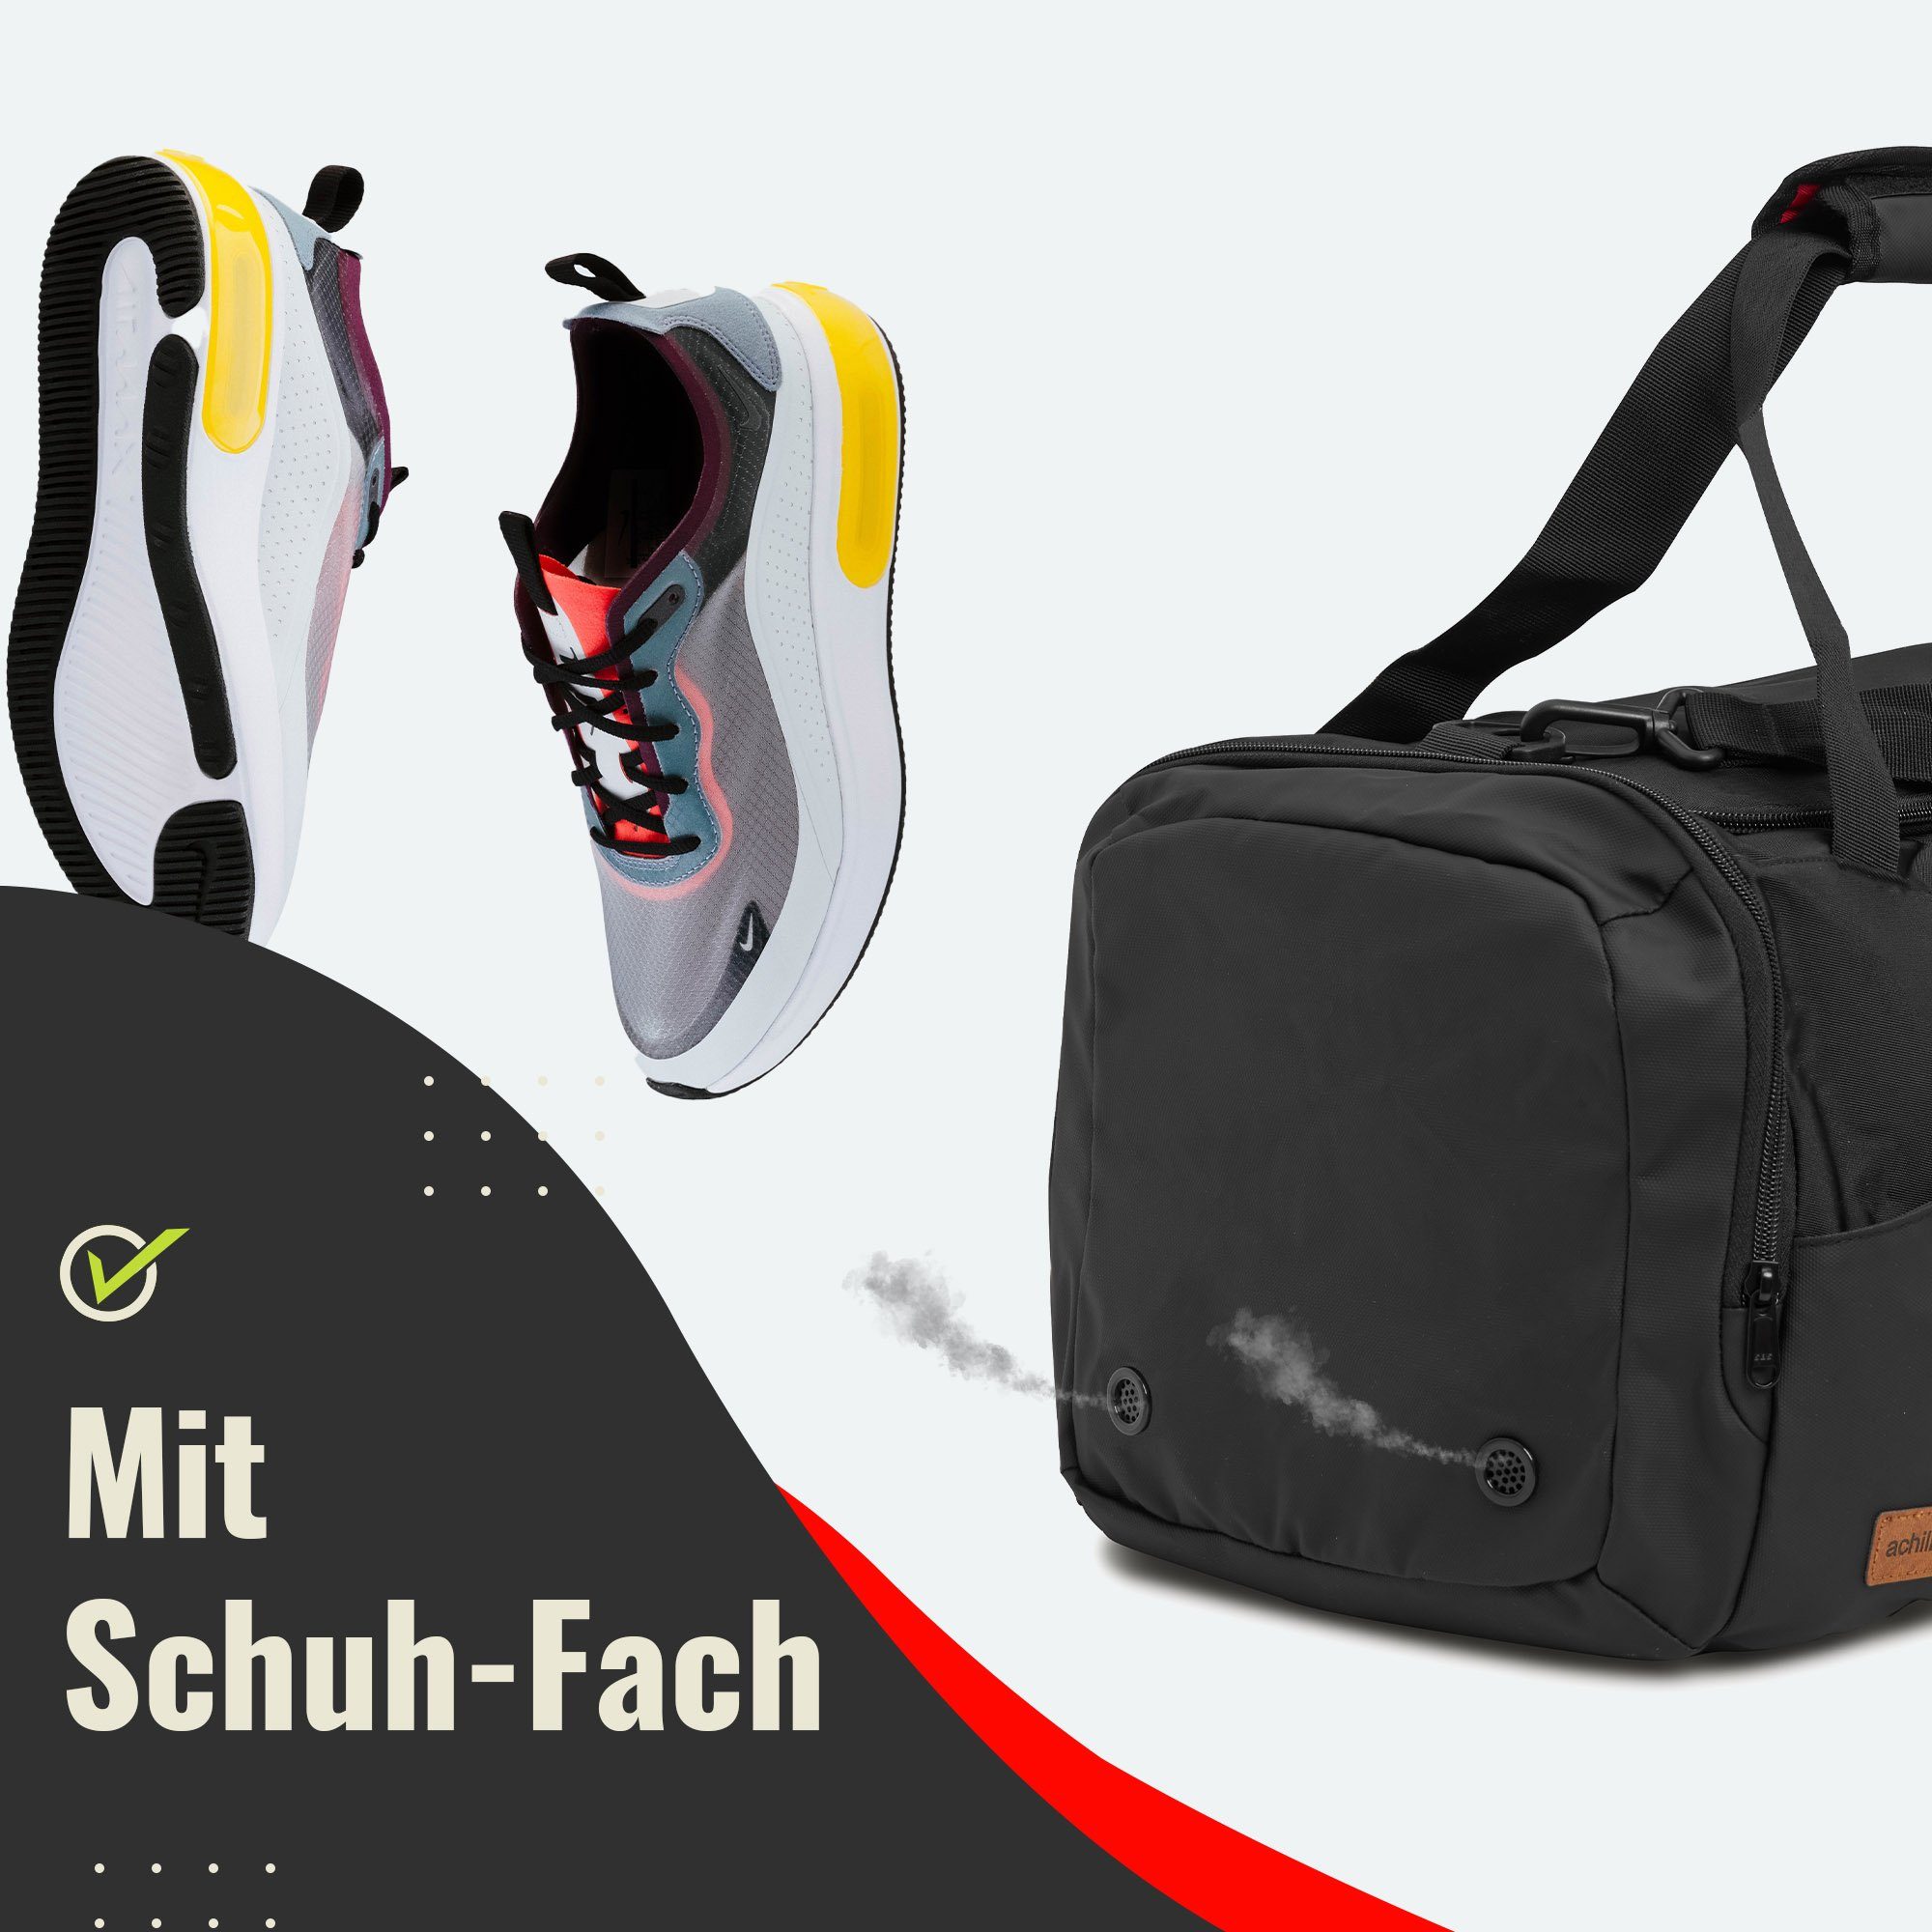 (1) Reisetasche Sporttasche Schuhfach, Fitness-Tasche, Trainingstasche, achilles Gym-Bag mit